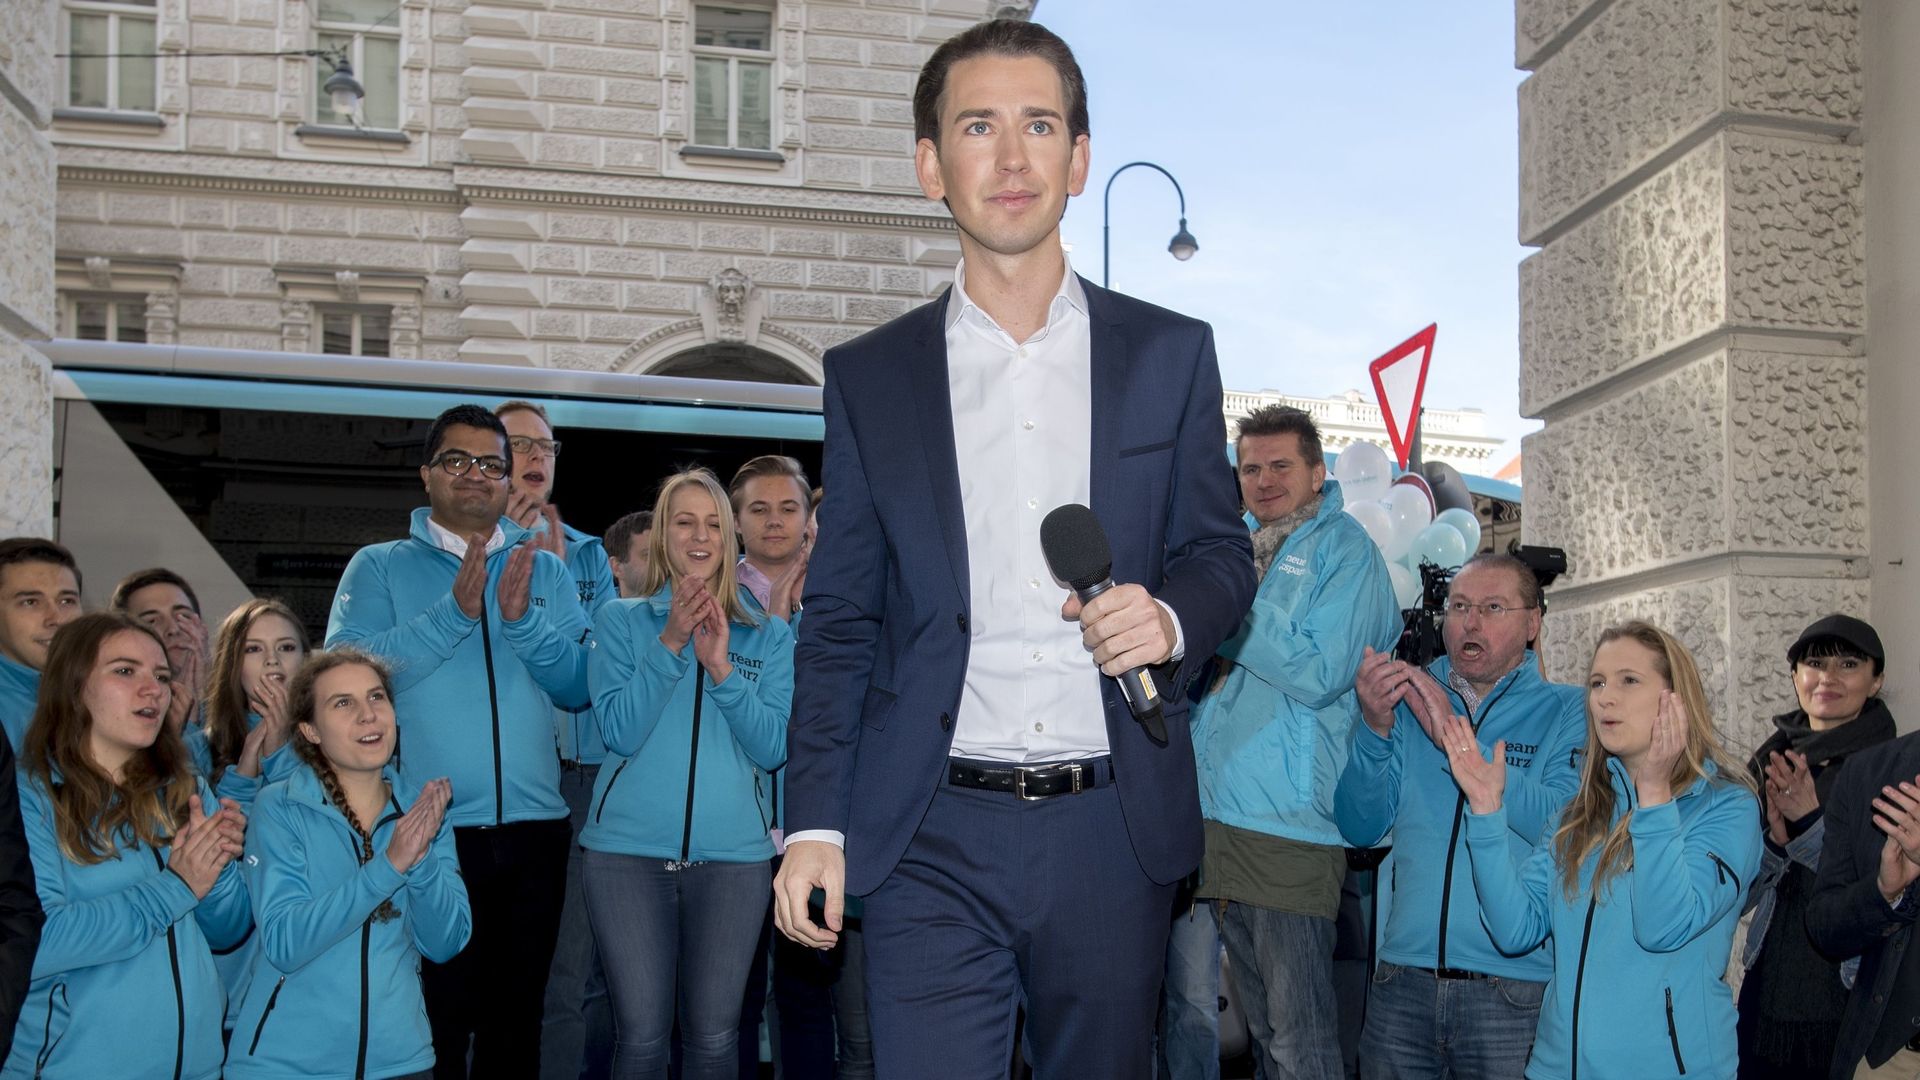 Sebastian Kurz, le nouveau visage de la droite autrichienne, sera-t-il chancelier?